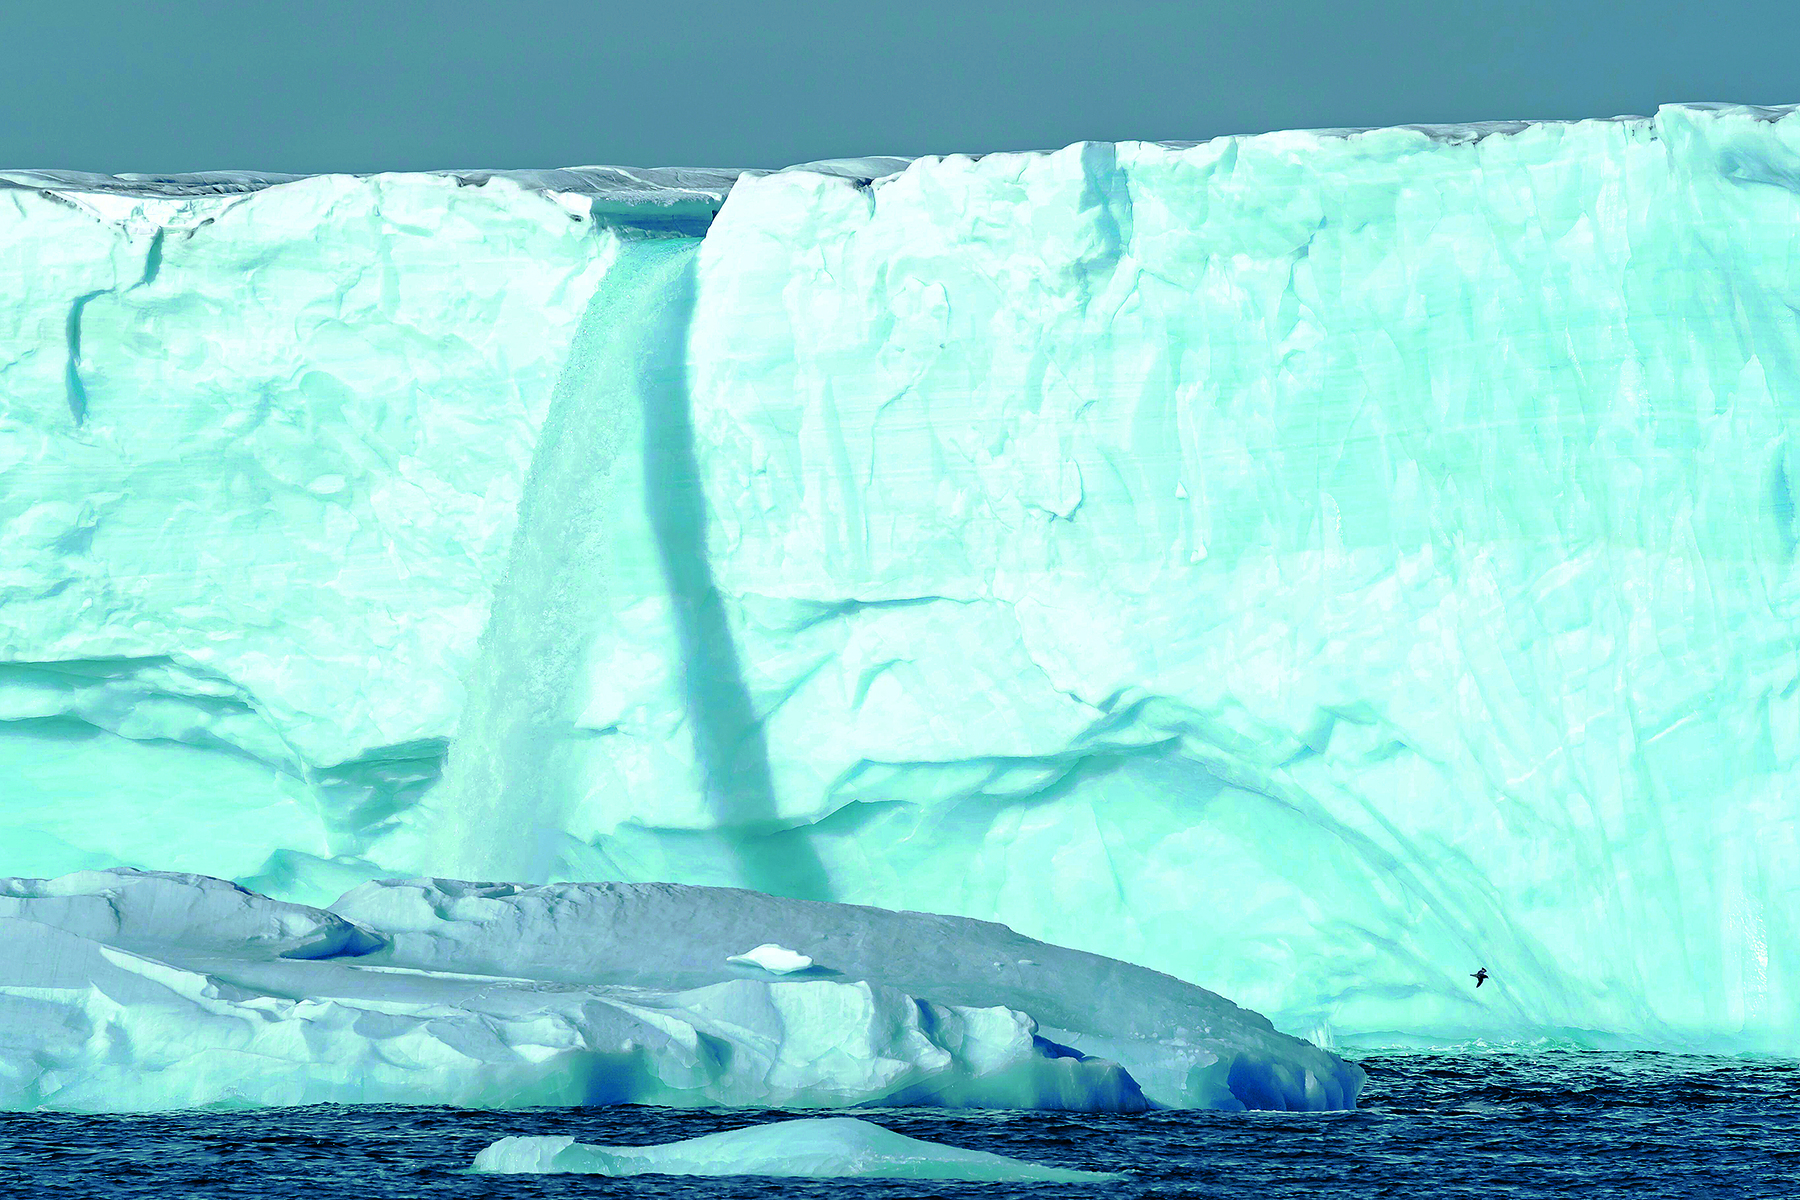 Fotografia. Uma grande geleira em tons de azul-claro, na horizontal, diante do oceano em tons de azul-escuro. No alto, céu em cinza. Ao centro da geleira, uma queda de água que cai sobre o oceano.